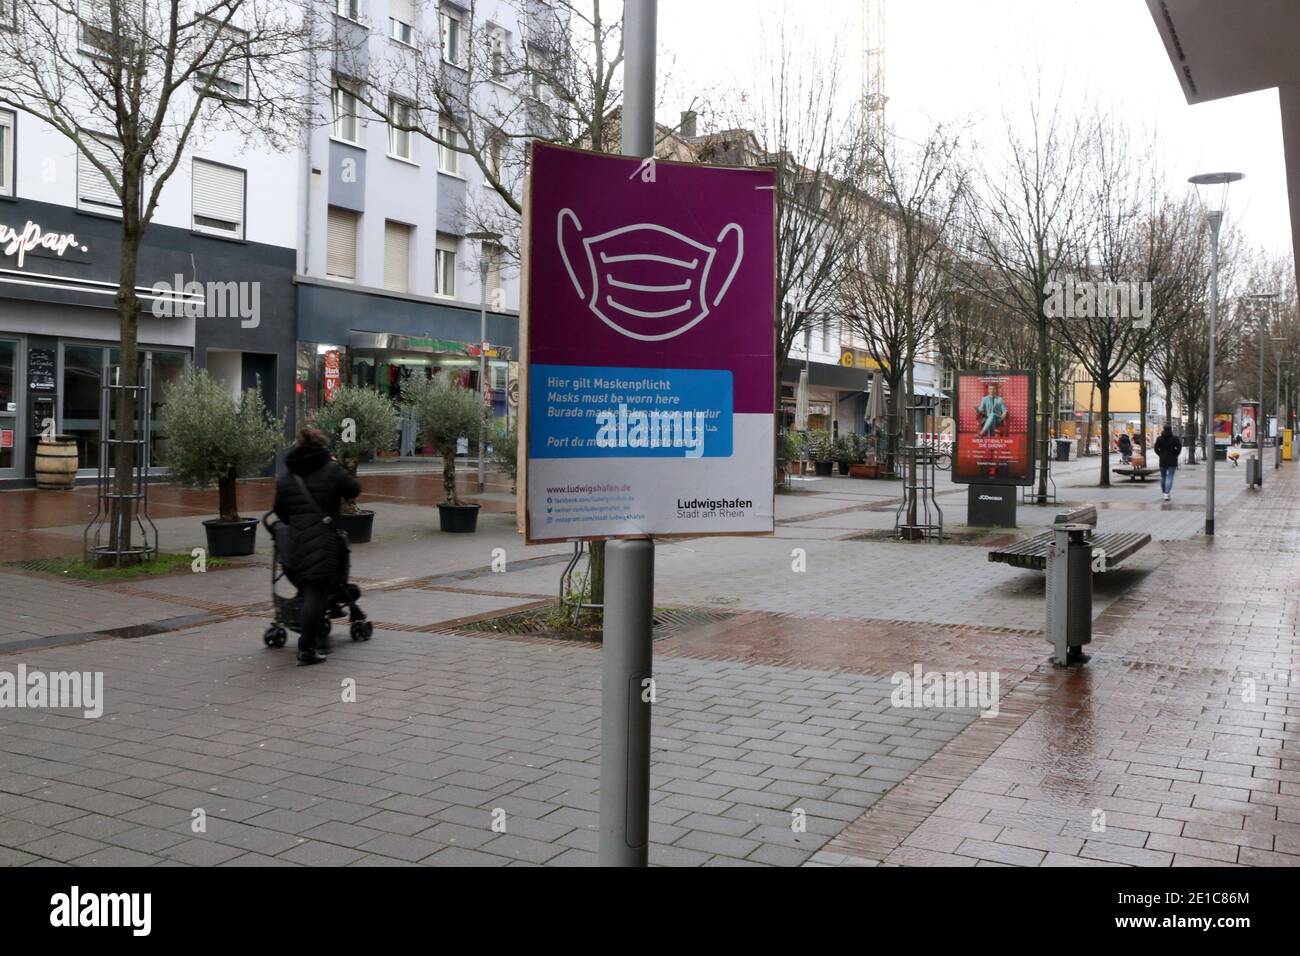 Symbolhaft für die Corona-Tristesse in Deutschland: Die menschenleere Fußgängerzone in Ludwigshafen (Rheinland-Pfalz) Stock Photo